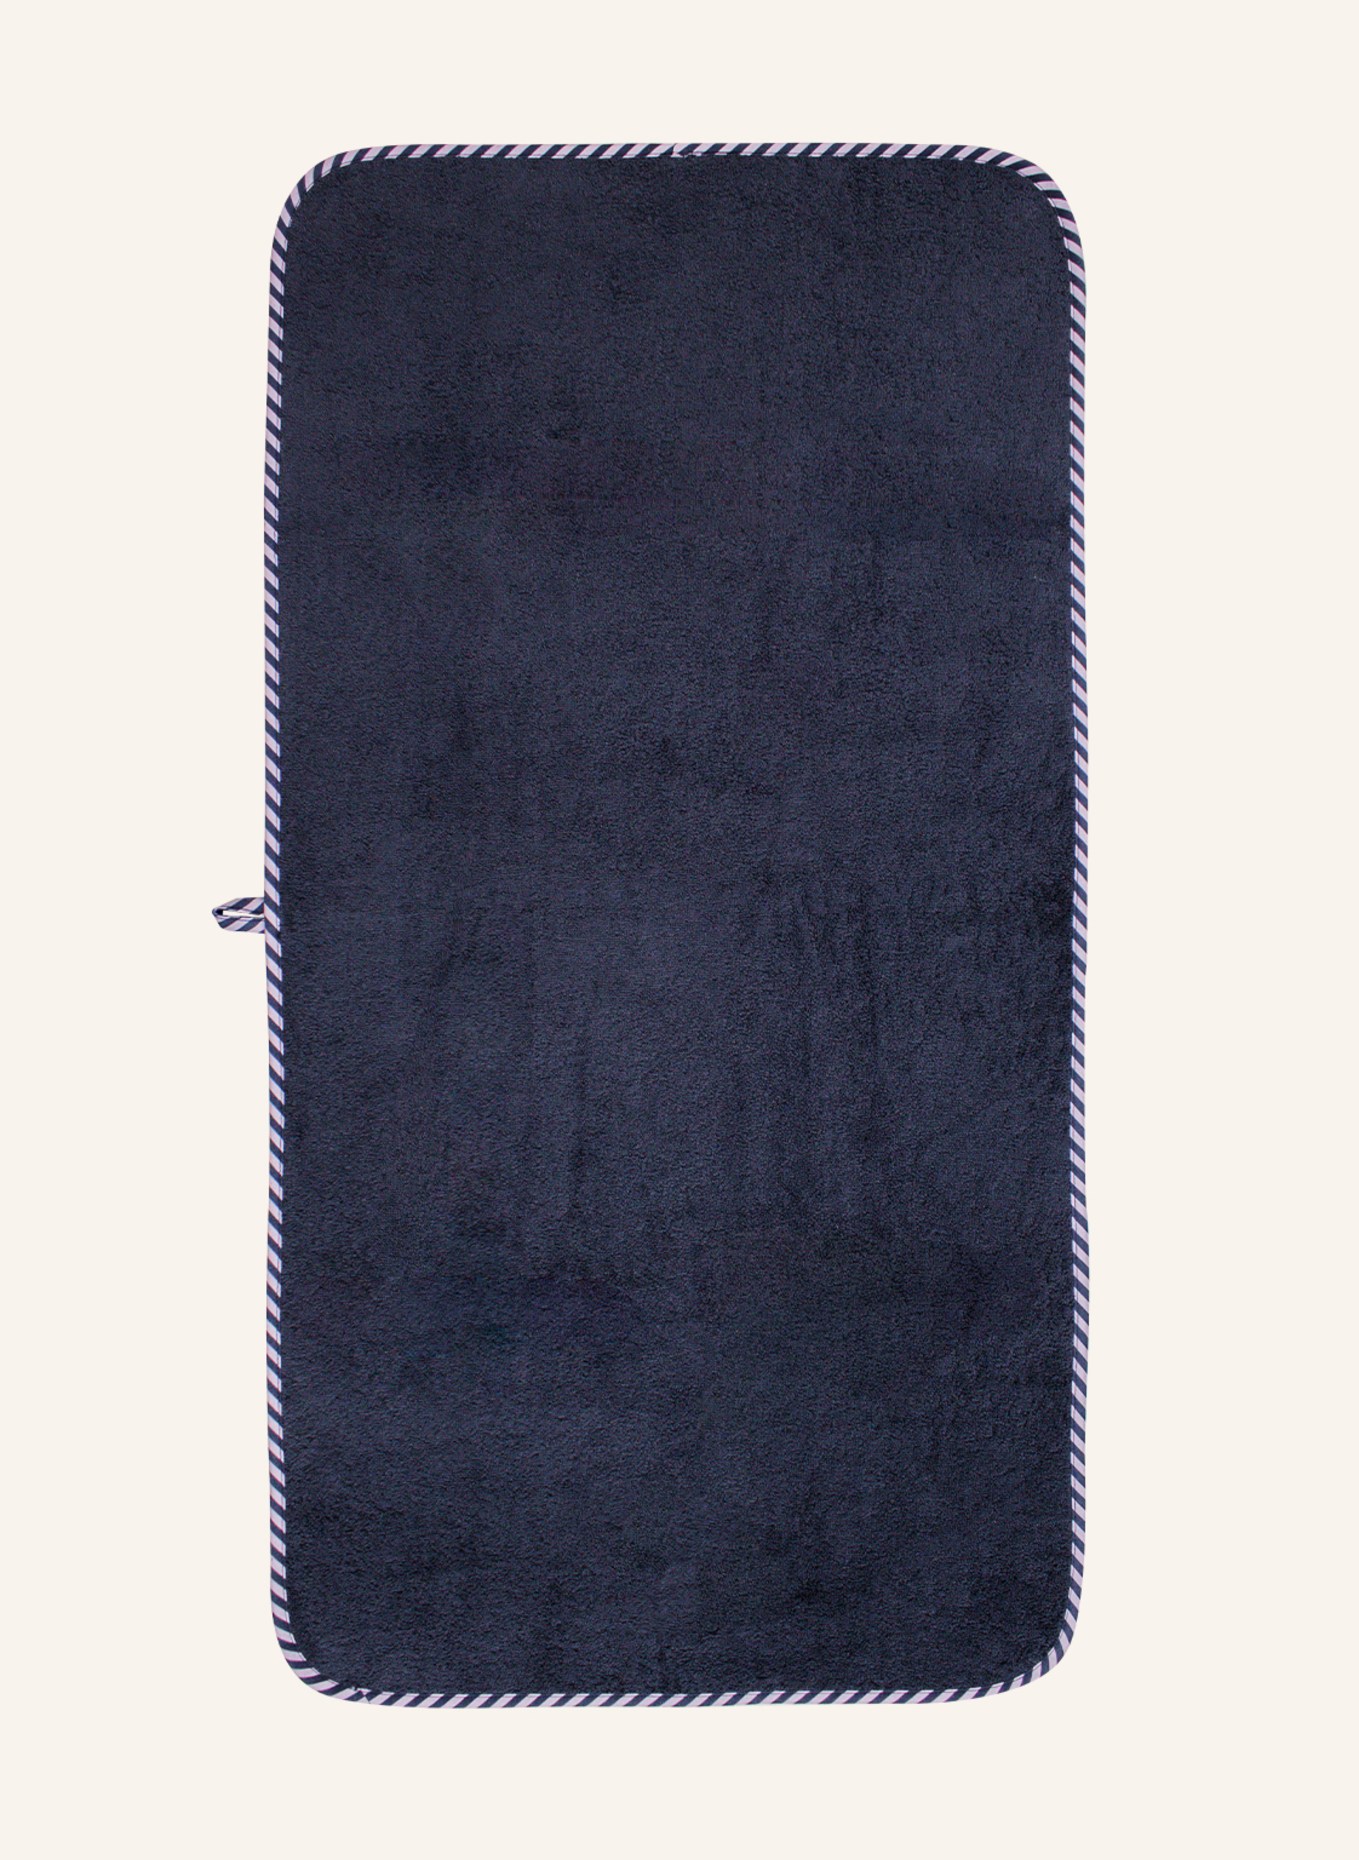 KATHA Covers Handtuch EINHORN, Farbe: BLAU (Bild 2)